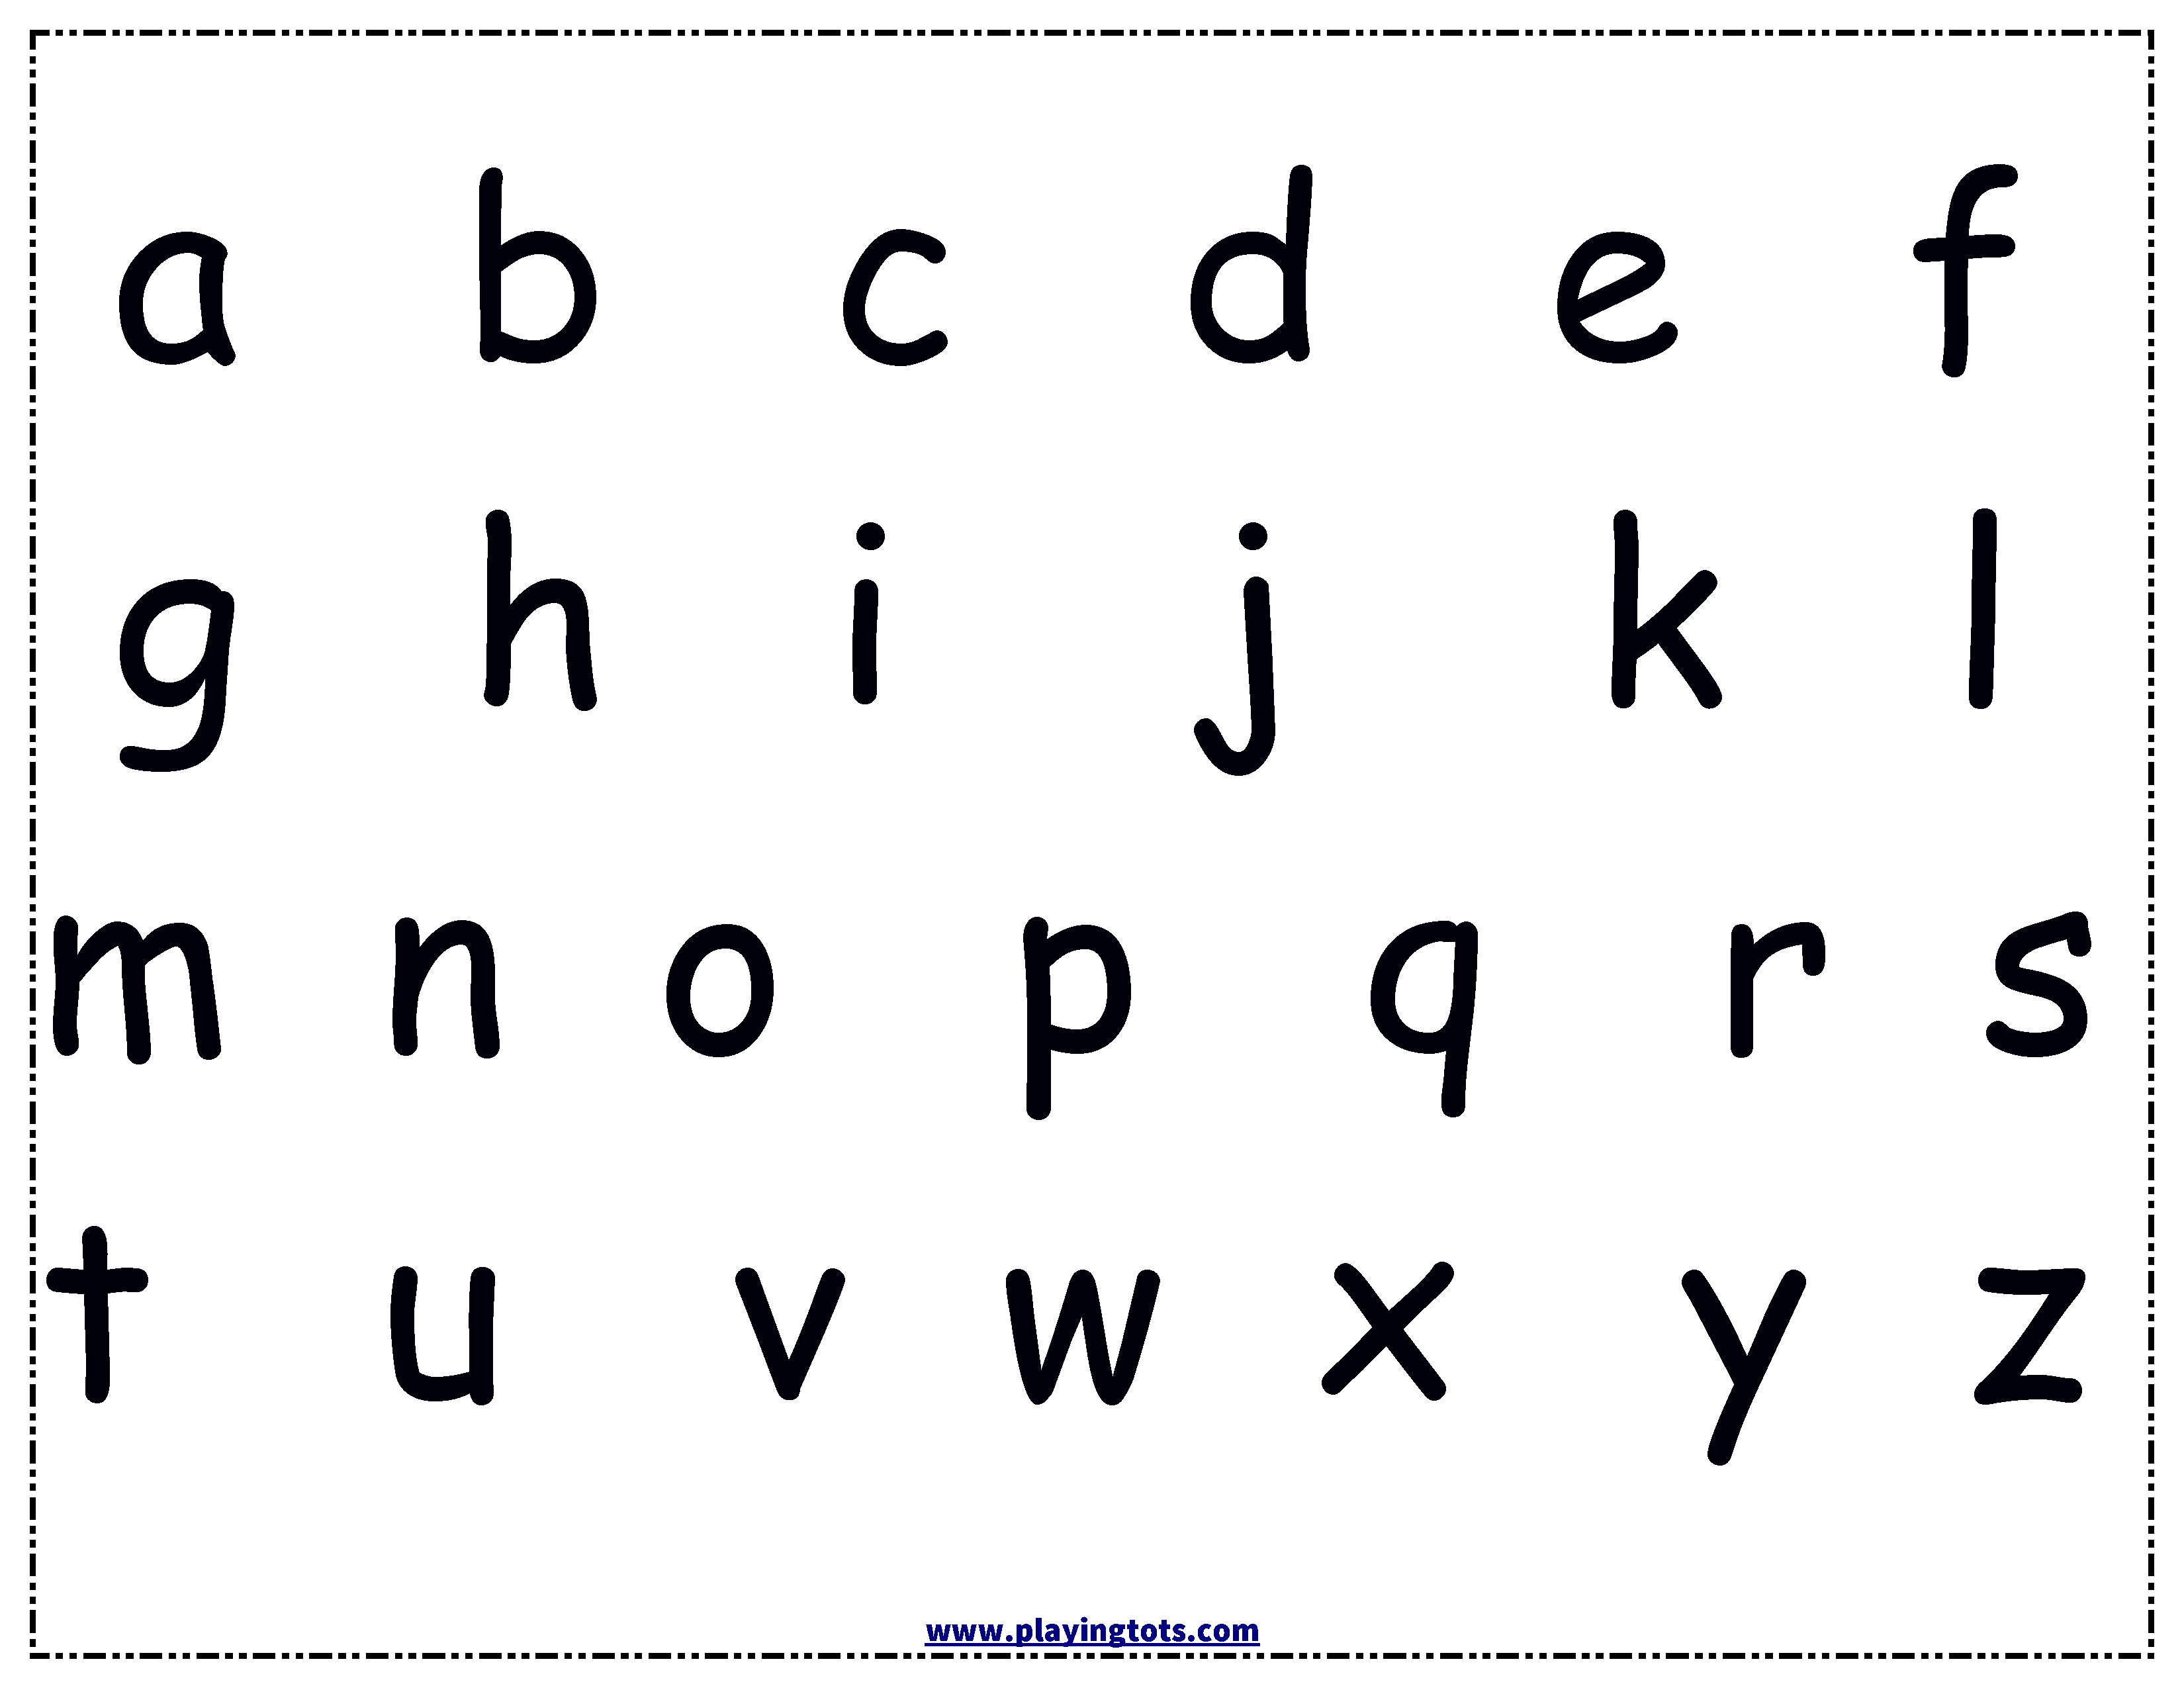 alphabet-chart-alphabet-chart-printable-alphabet-charts-alphabet-free-printable-alphabet-chart